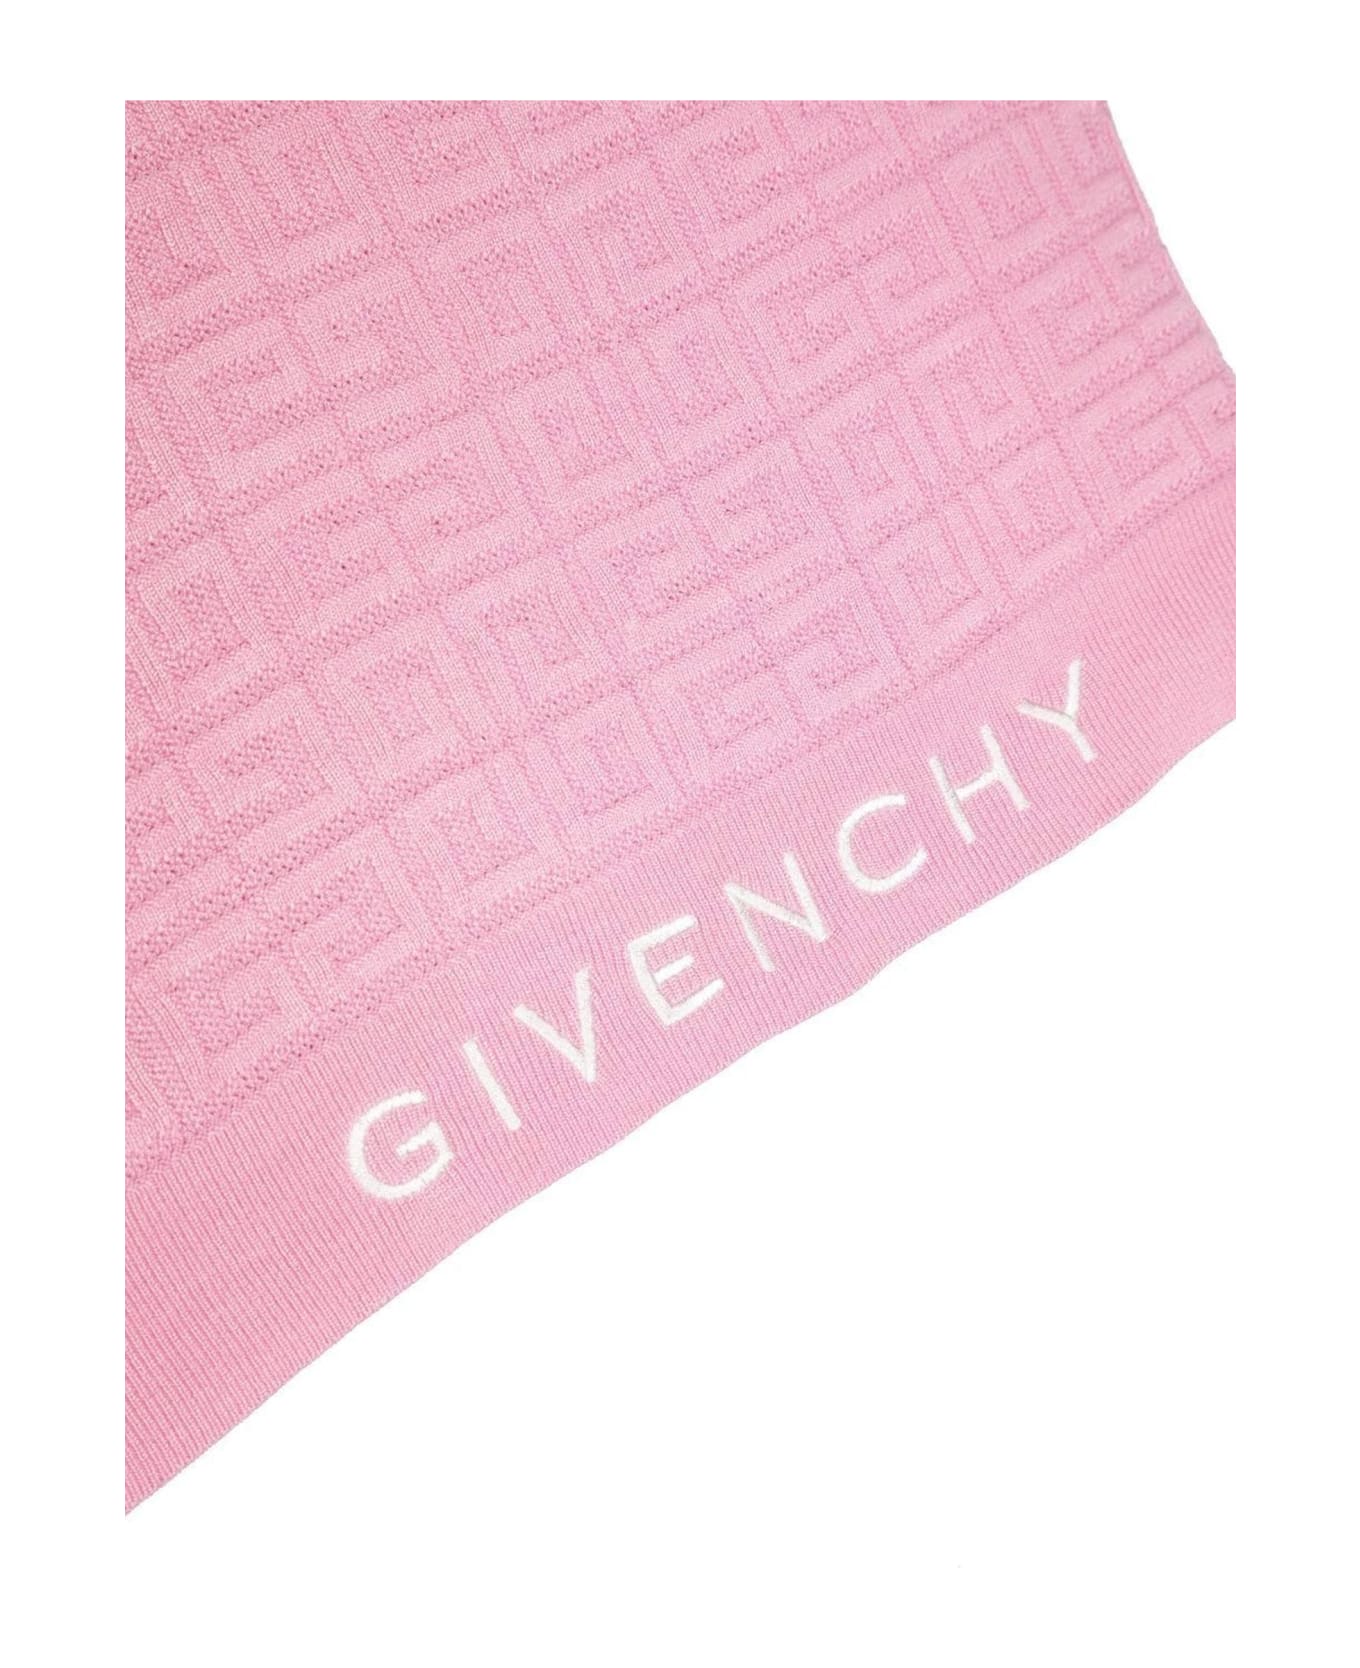 Givenchy Pink Viscose Top - Rosa